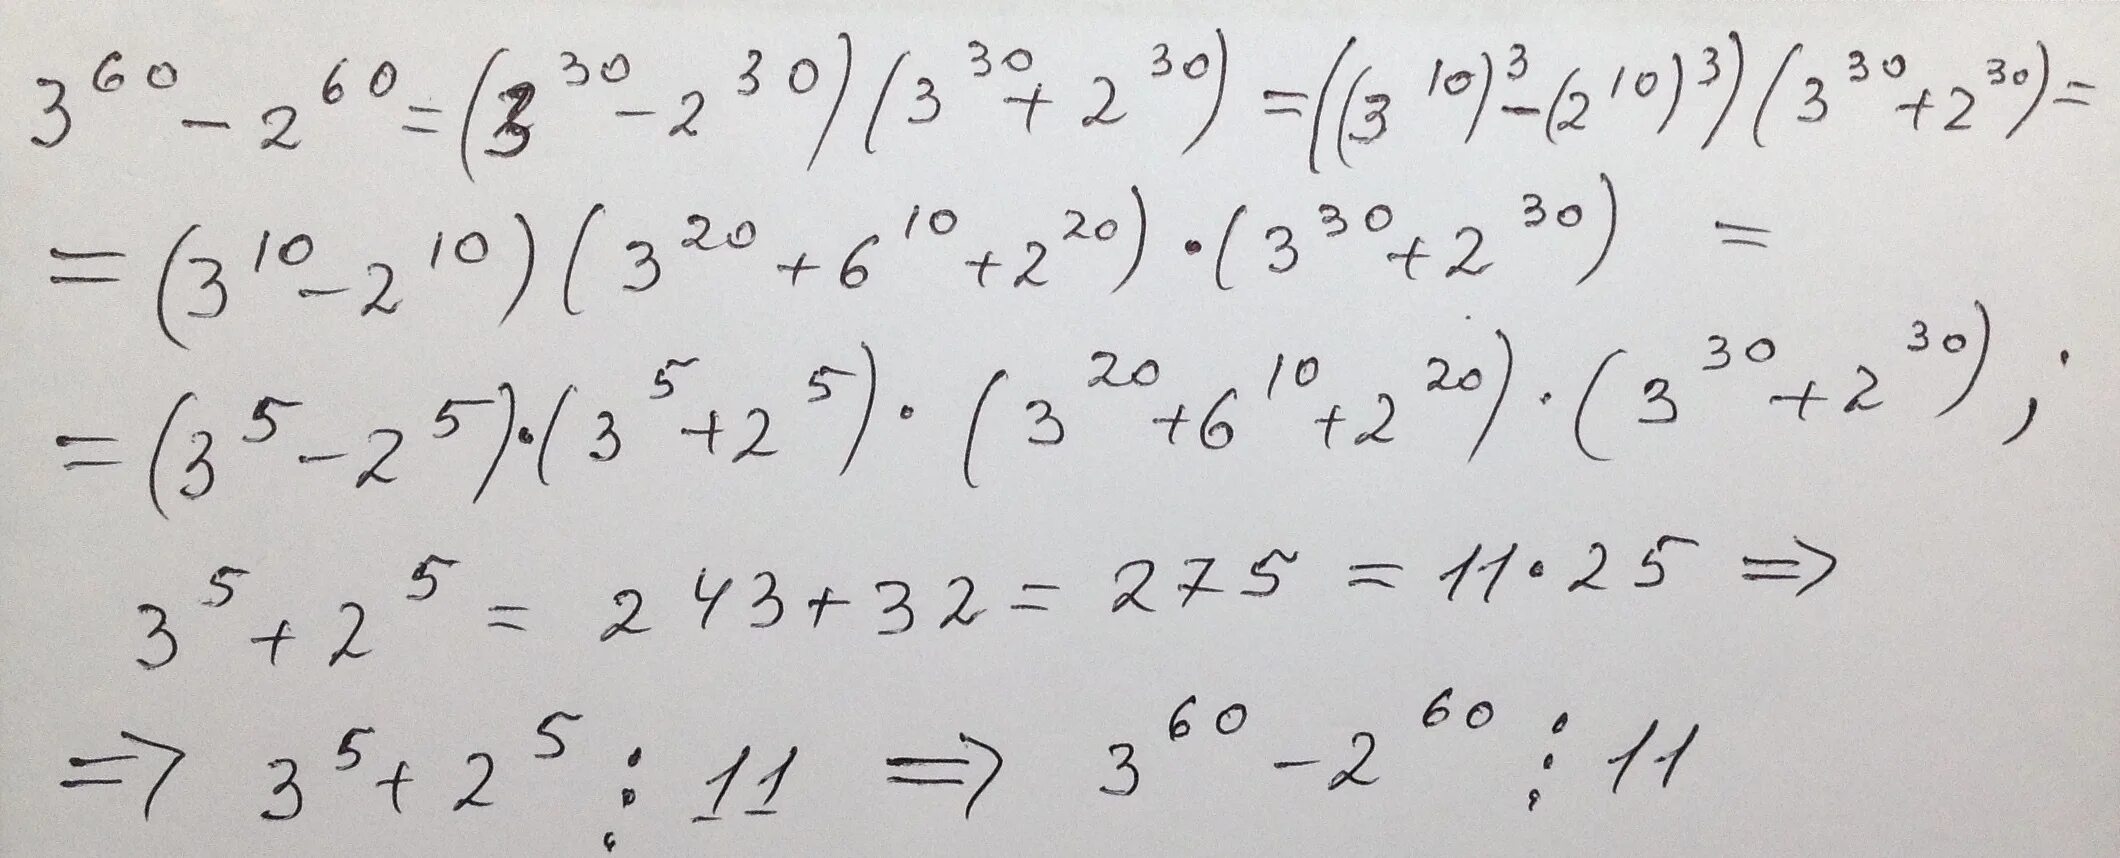 З 62 2. (А-8)2- 60<(А-4)(А-12). 60/V2 - 60/(v2 - 2) = 1. На что делится 60. 3×60+2/5×60 ответ.